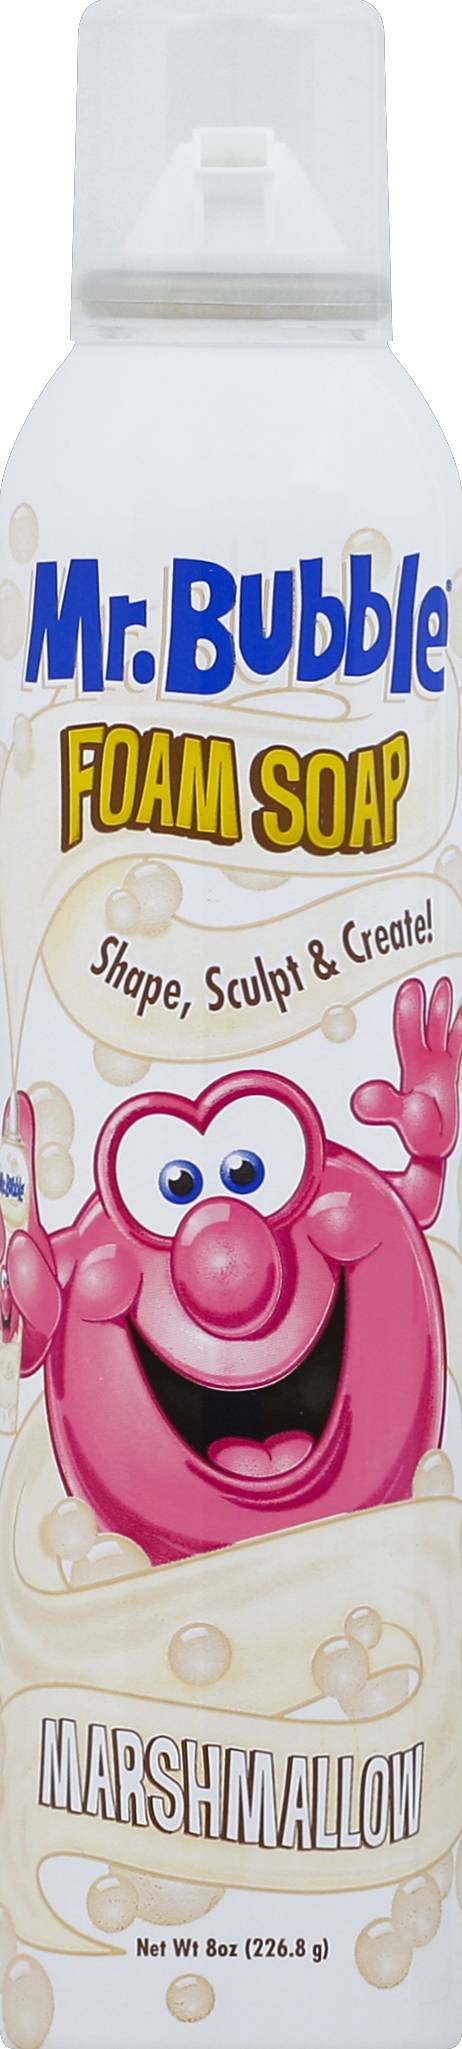 Mr. Bubble Foam Soap, Sugar Cookie/Marshmallow, Twin Pack